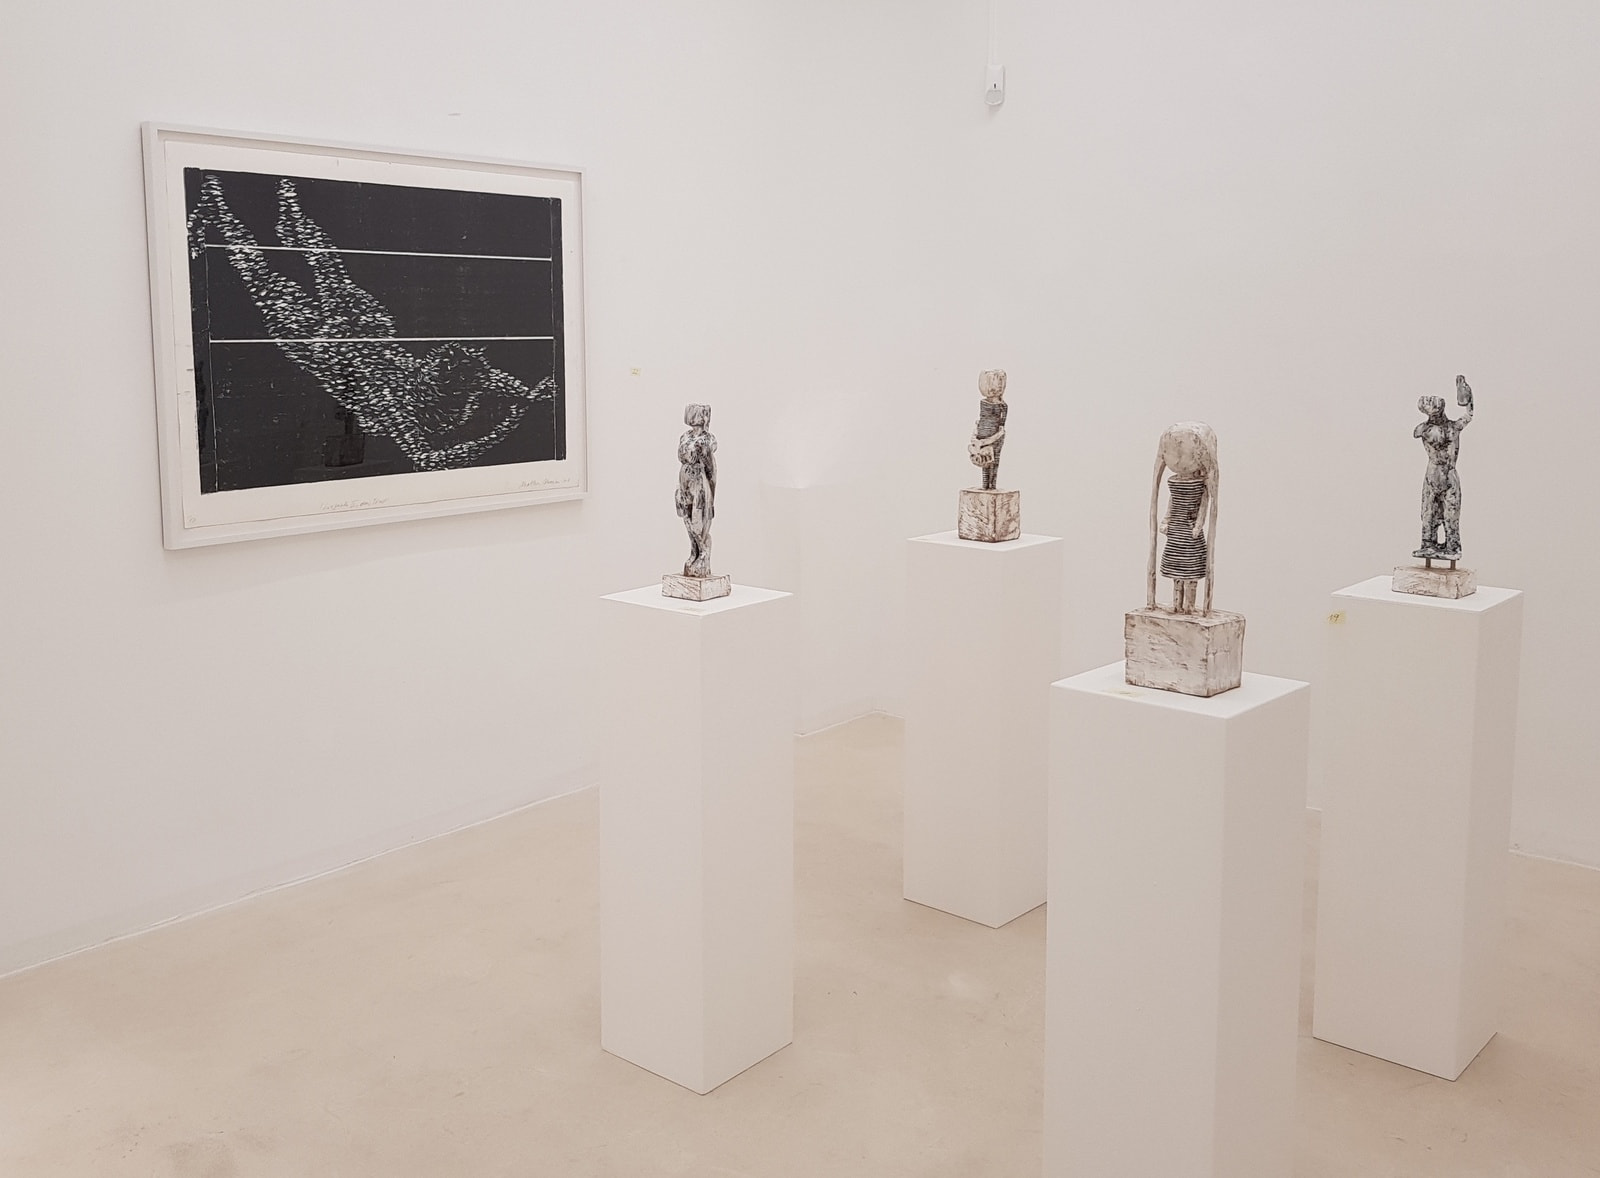 SPECTRUM 10 Jahre Galerie Laing (30. Nov. 2019 – 2. Feb. 2020)